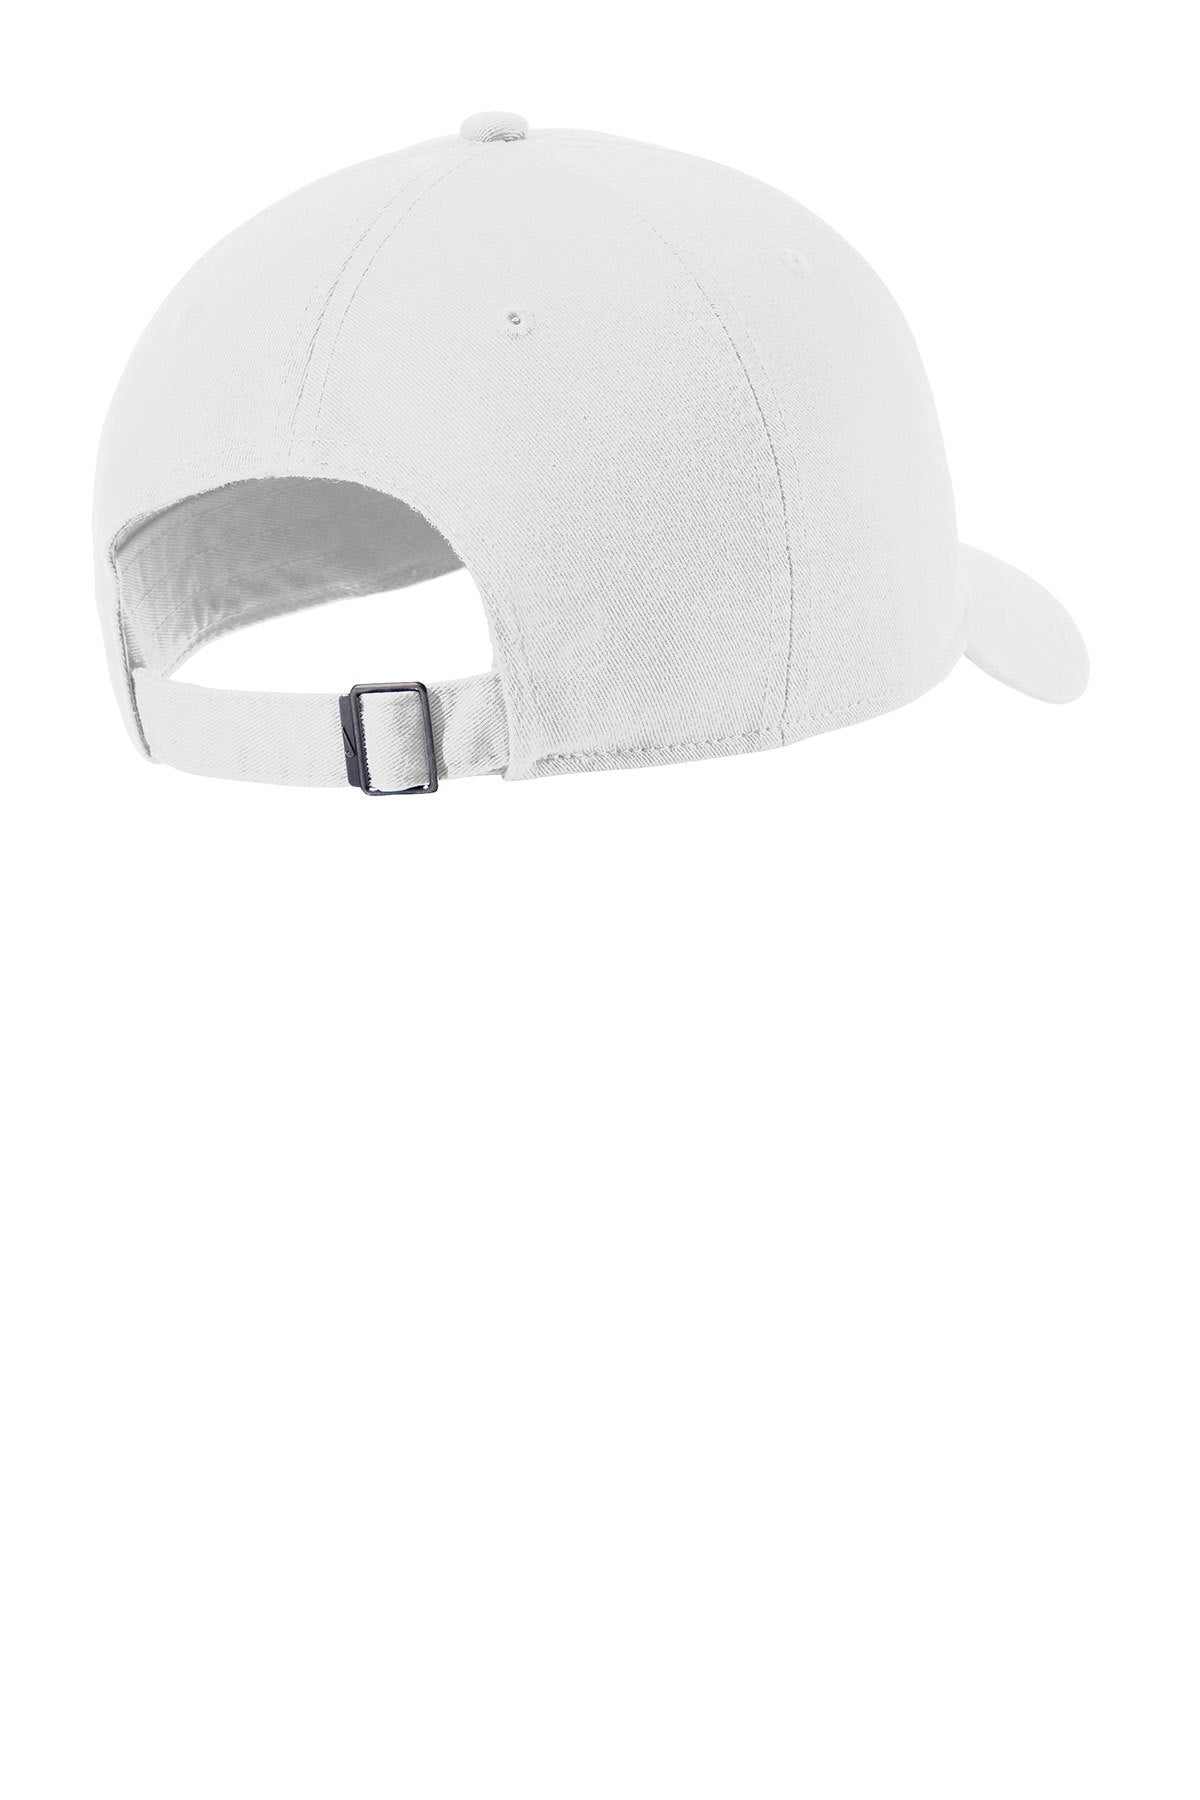 Nike Heritage 86 Customized Caps, White